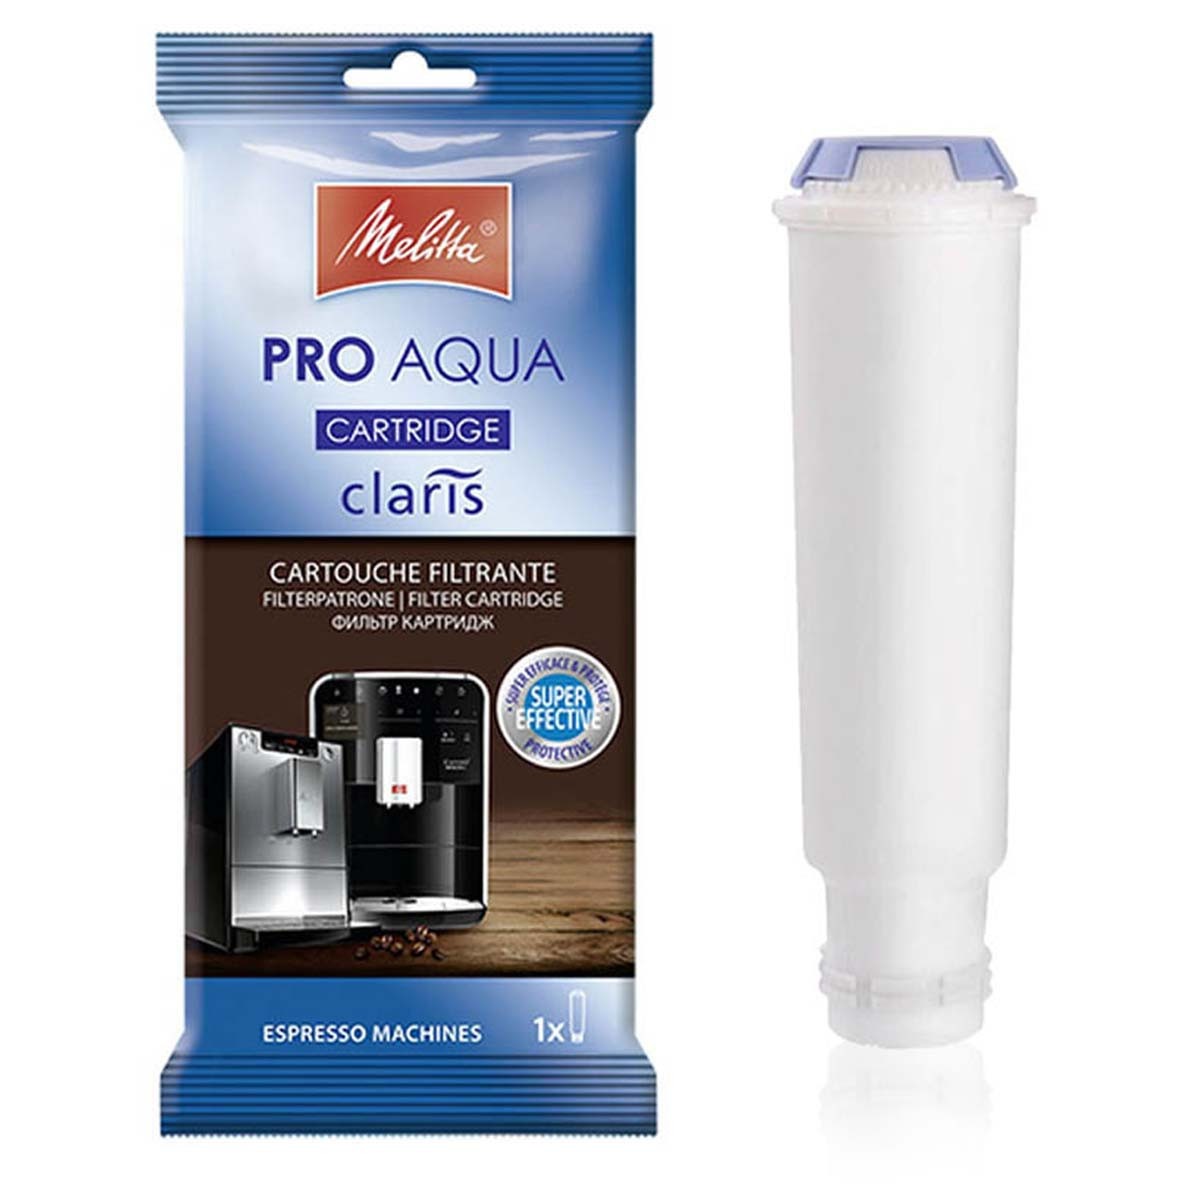 Produit détartrant Melitta : Liquide Multi-Usages - 375 ml